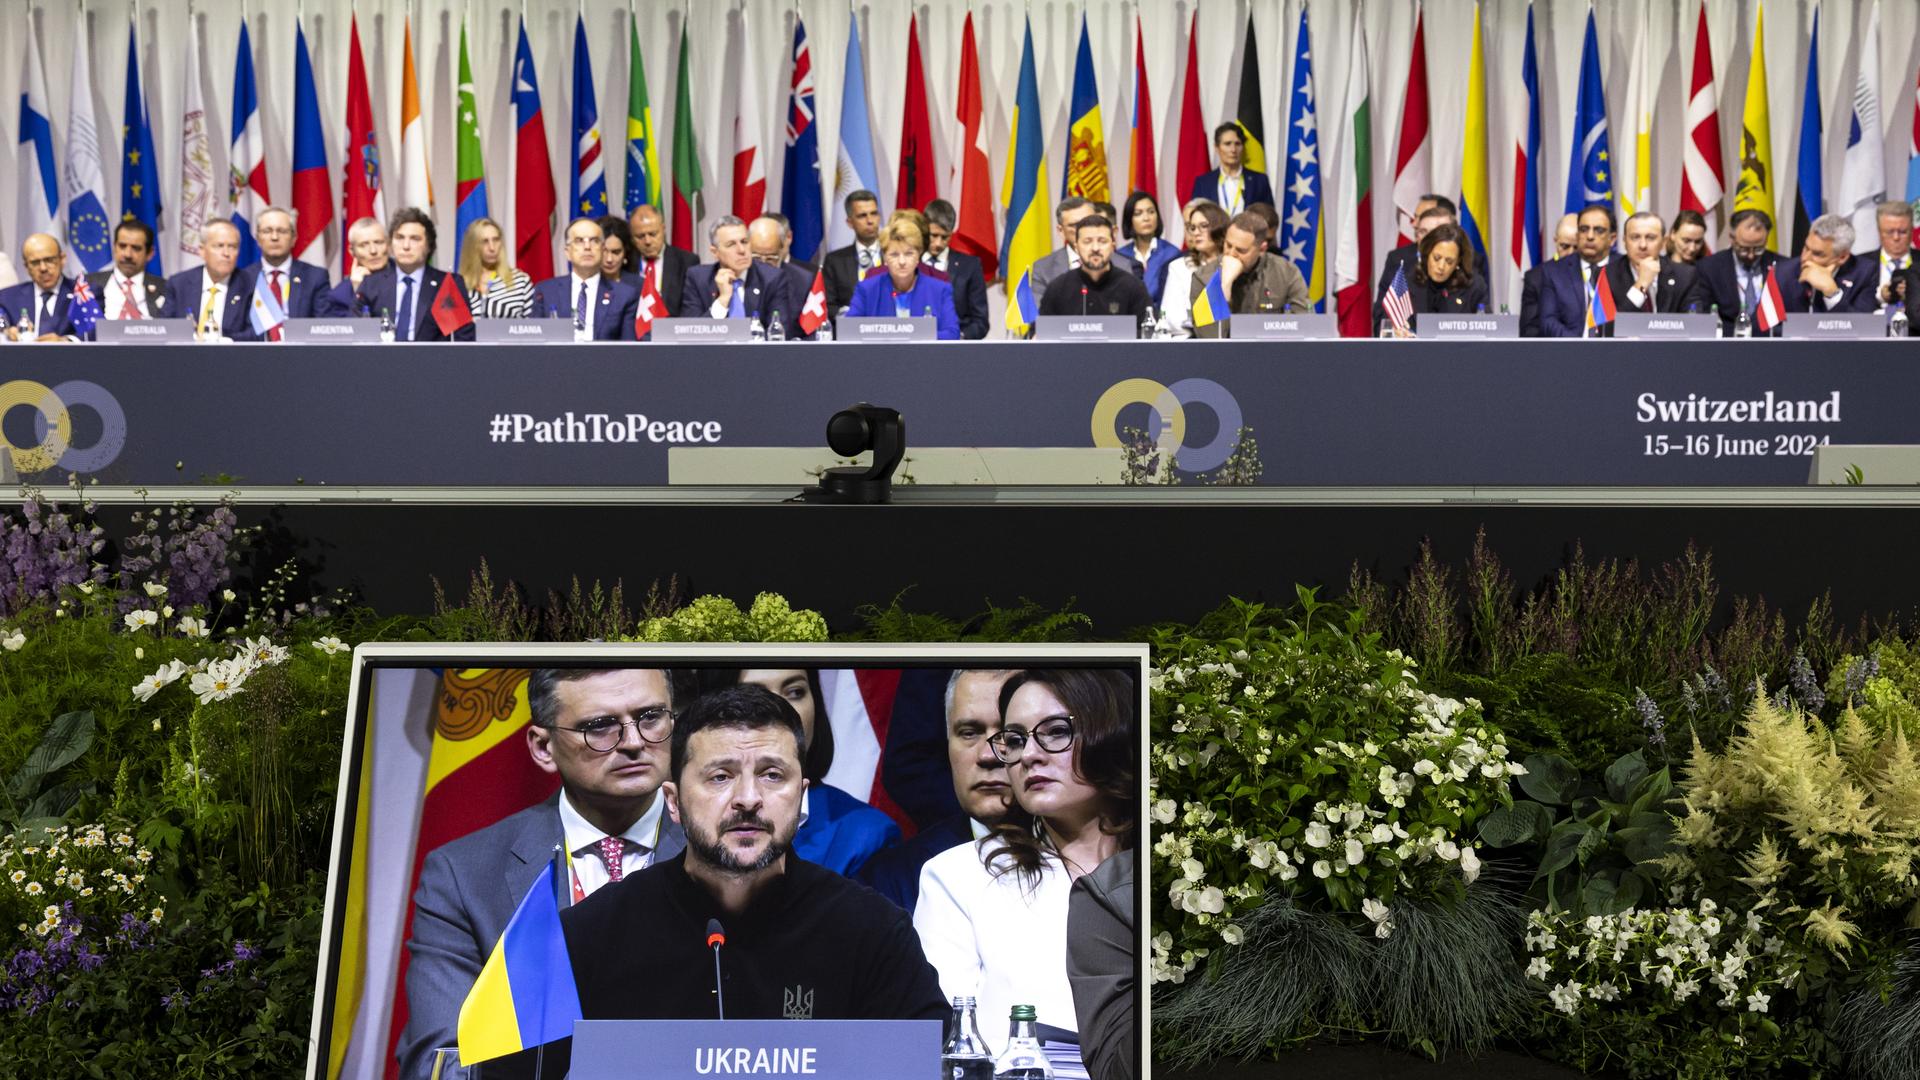 Wolodymyr Selenskyj, Präsident der Ukraine, spricht während einer Friedenskonferenz in der Schweiz. Er ist auf einem Bildschirm zu sehen, hinter ihm sind Teilnehmer und Flaggen aus zahlreichen Ländern zu erkennen. 